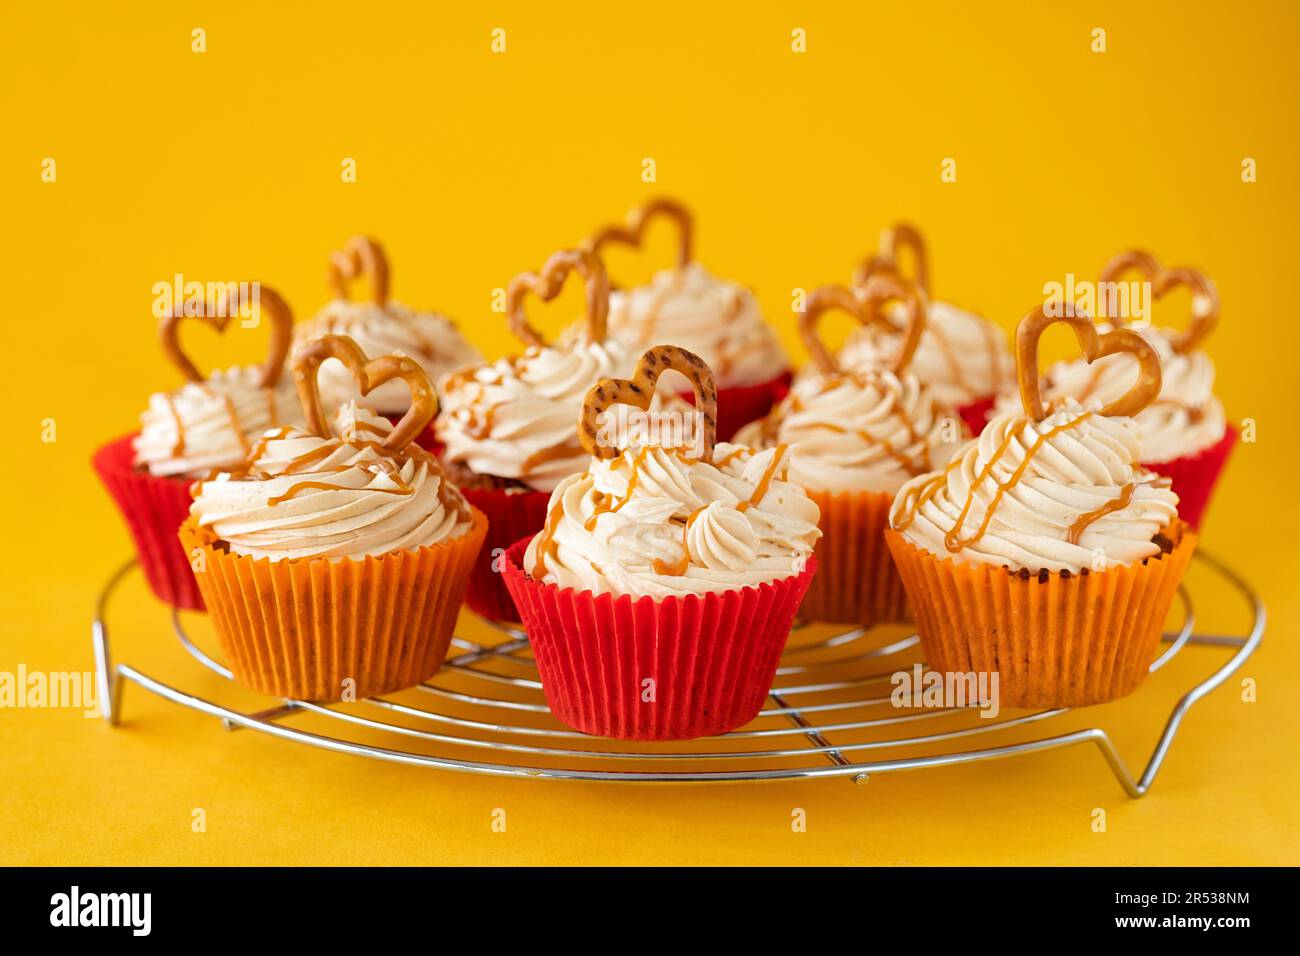 Eine Portion hausgemachter Karamell-Brezel-Cupcakes. Die Kuchen werden auf einem Kühlregal gezeigt und sind mit einer Brezel mit Buttercreme verziert Stockfoto